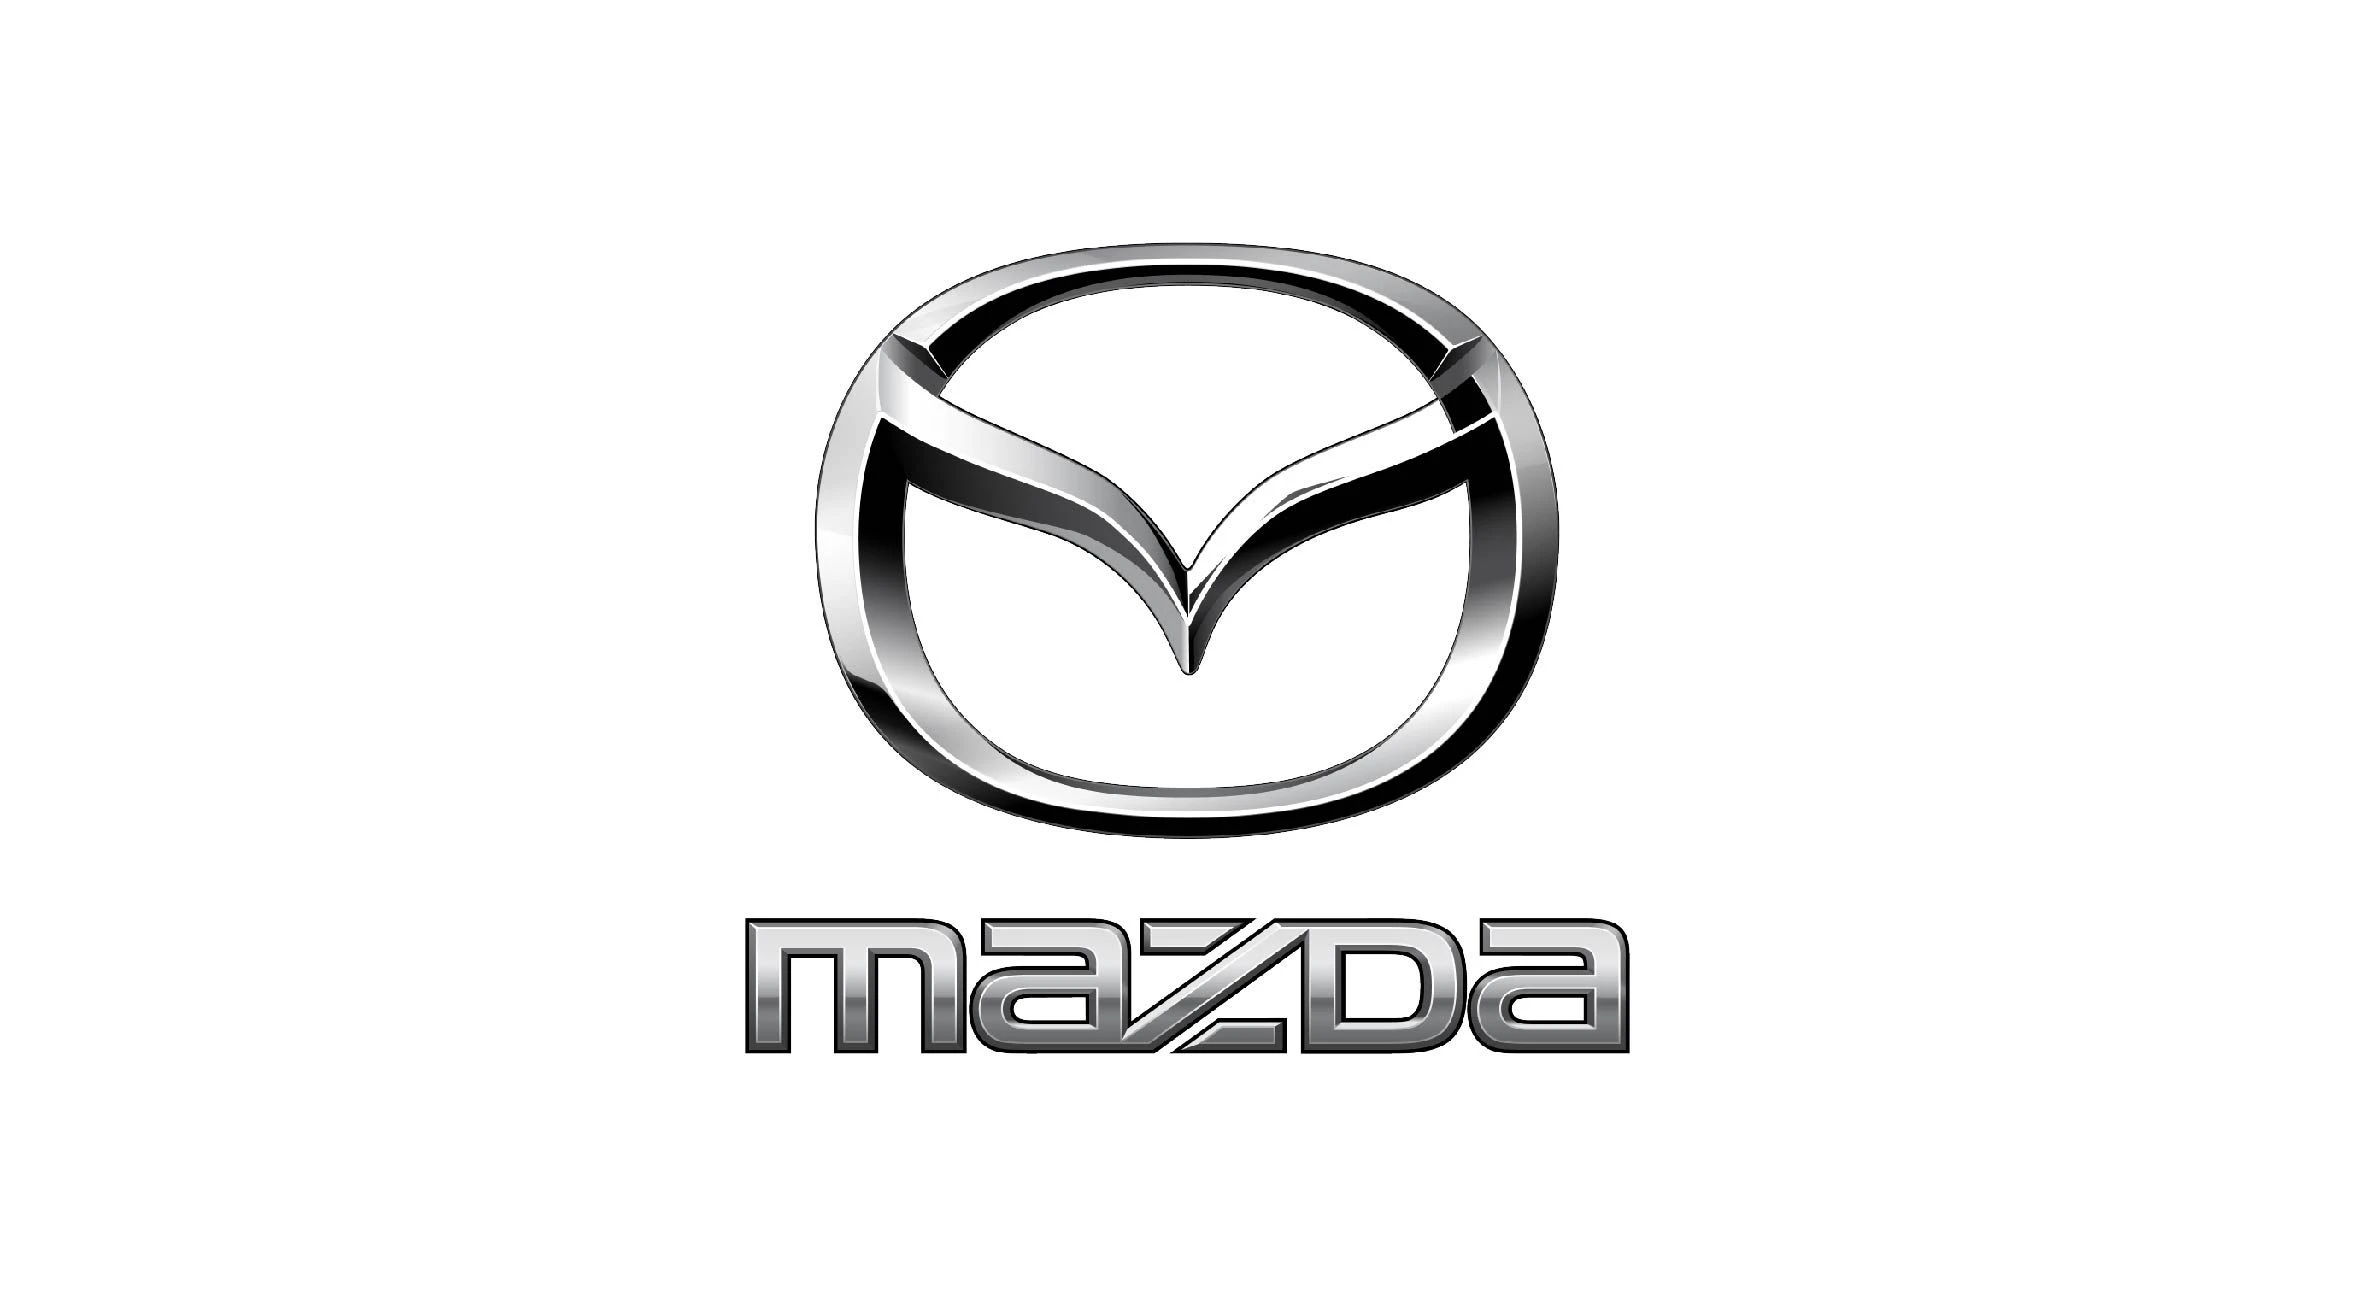 Mazda car brand logo